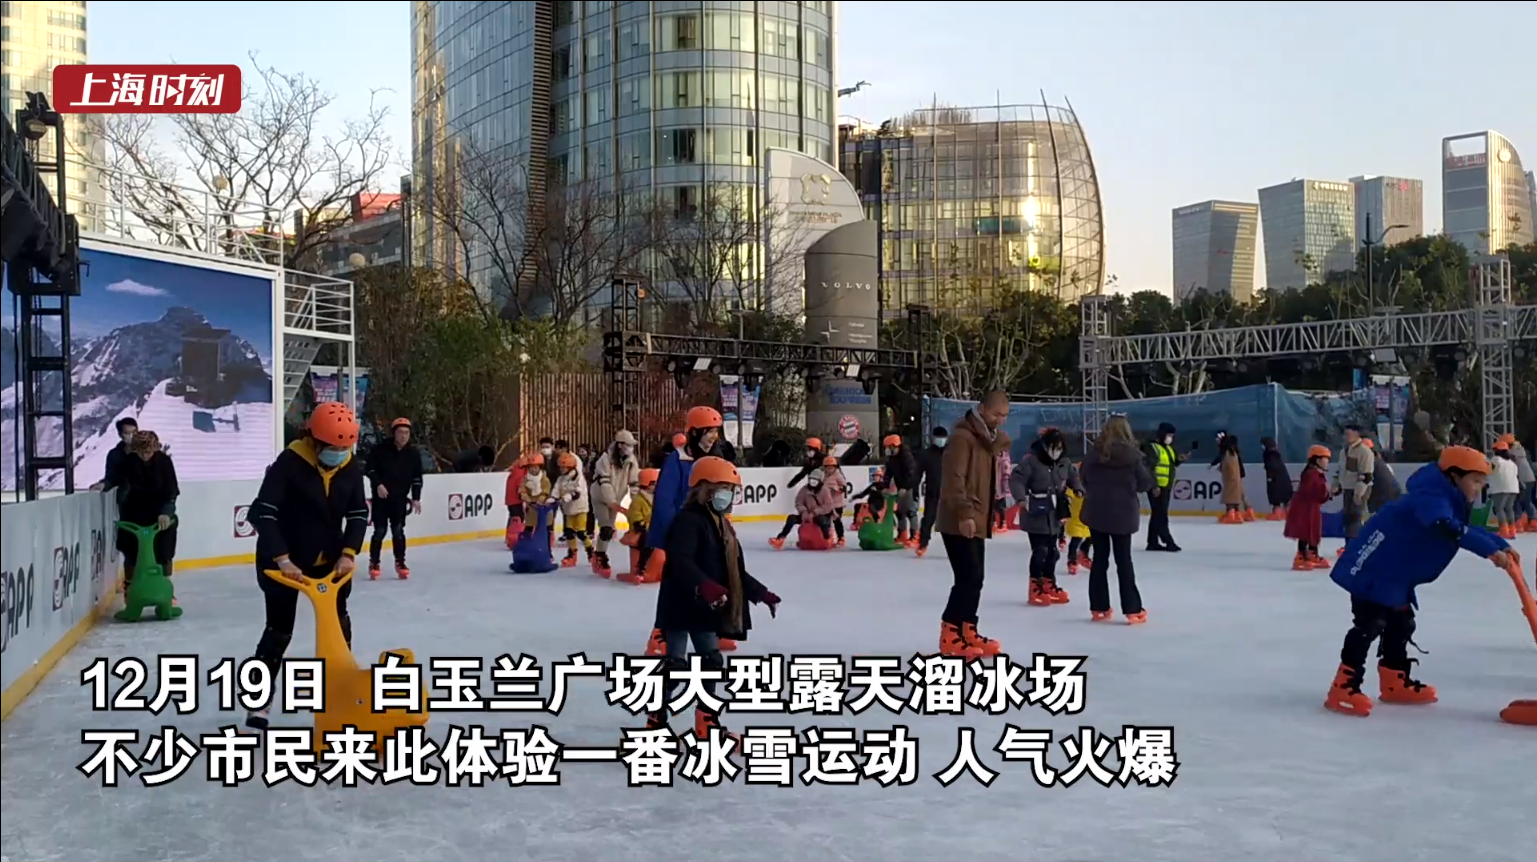 视频 | 沪上掀冰雪运动热潮 露天溜冰场上人气旺